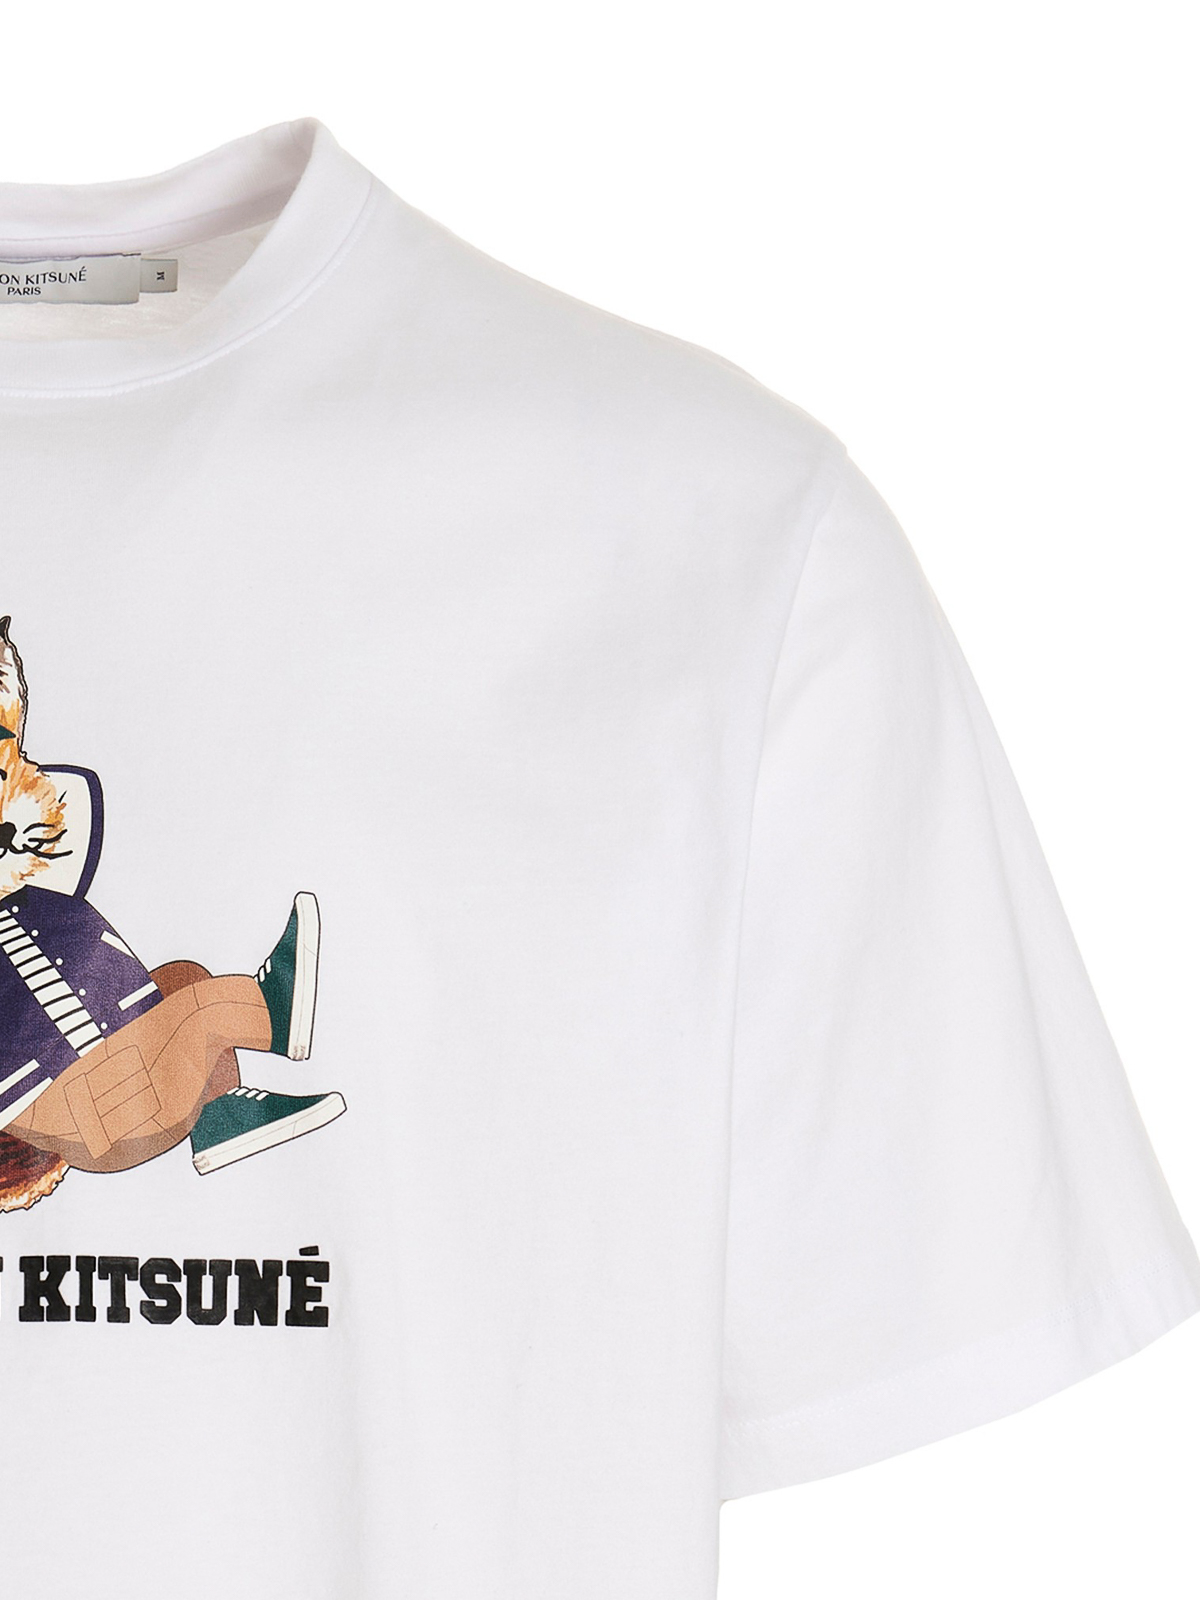 maison kitsune DRESSED FOX tシャツ white L